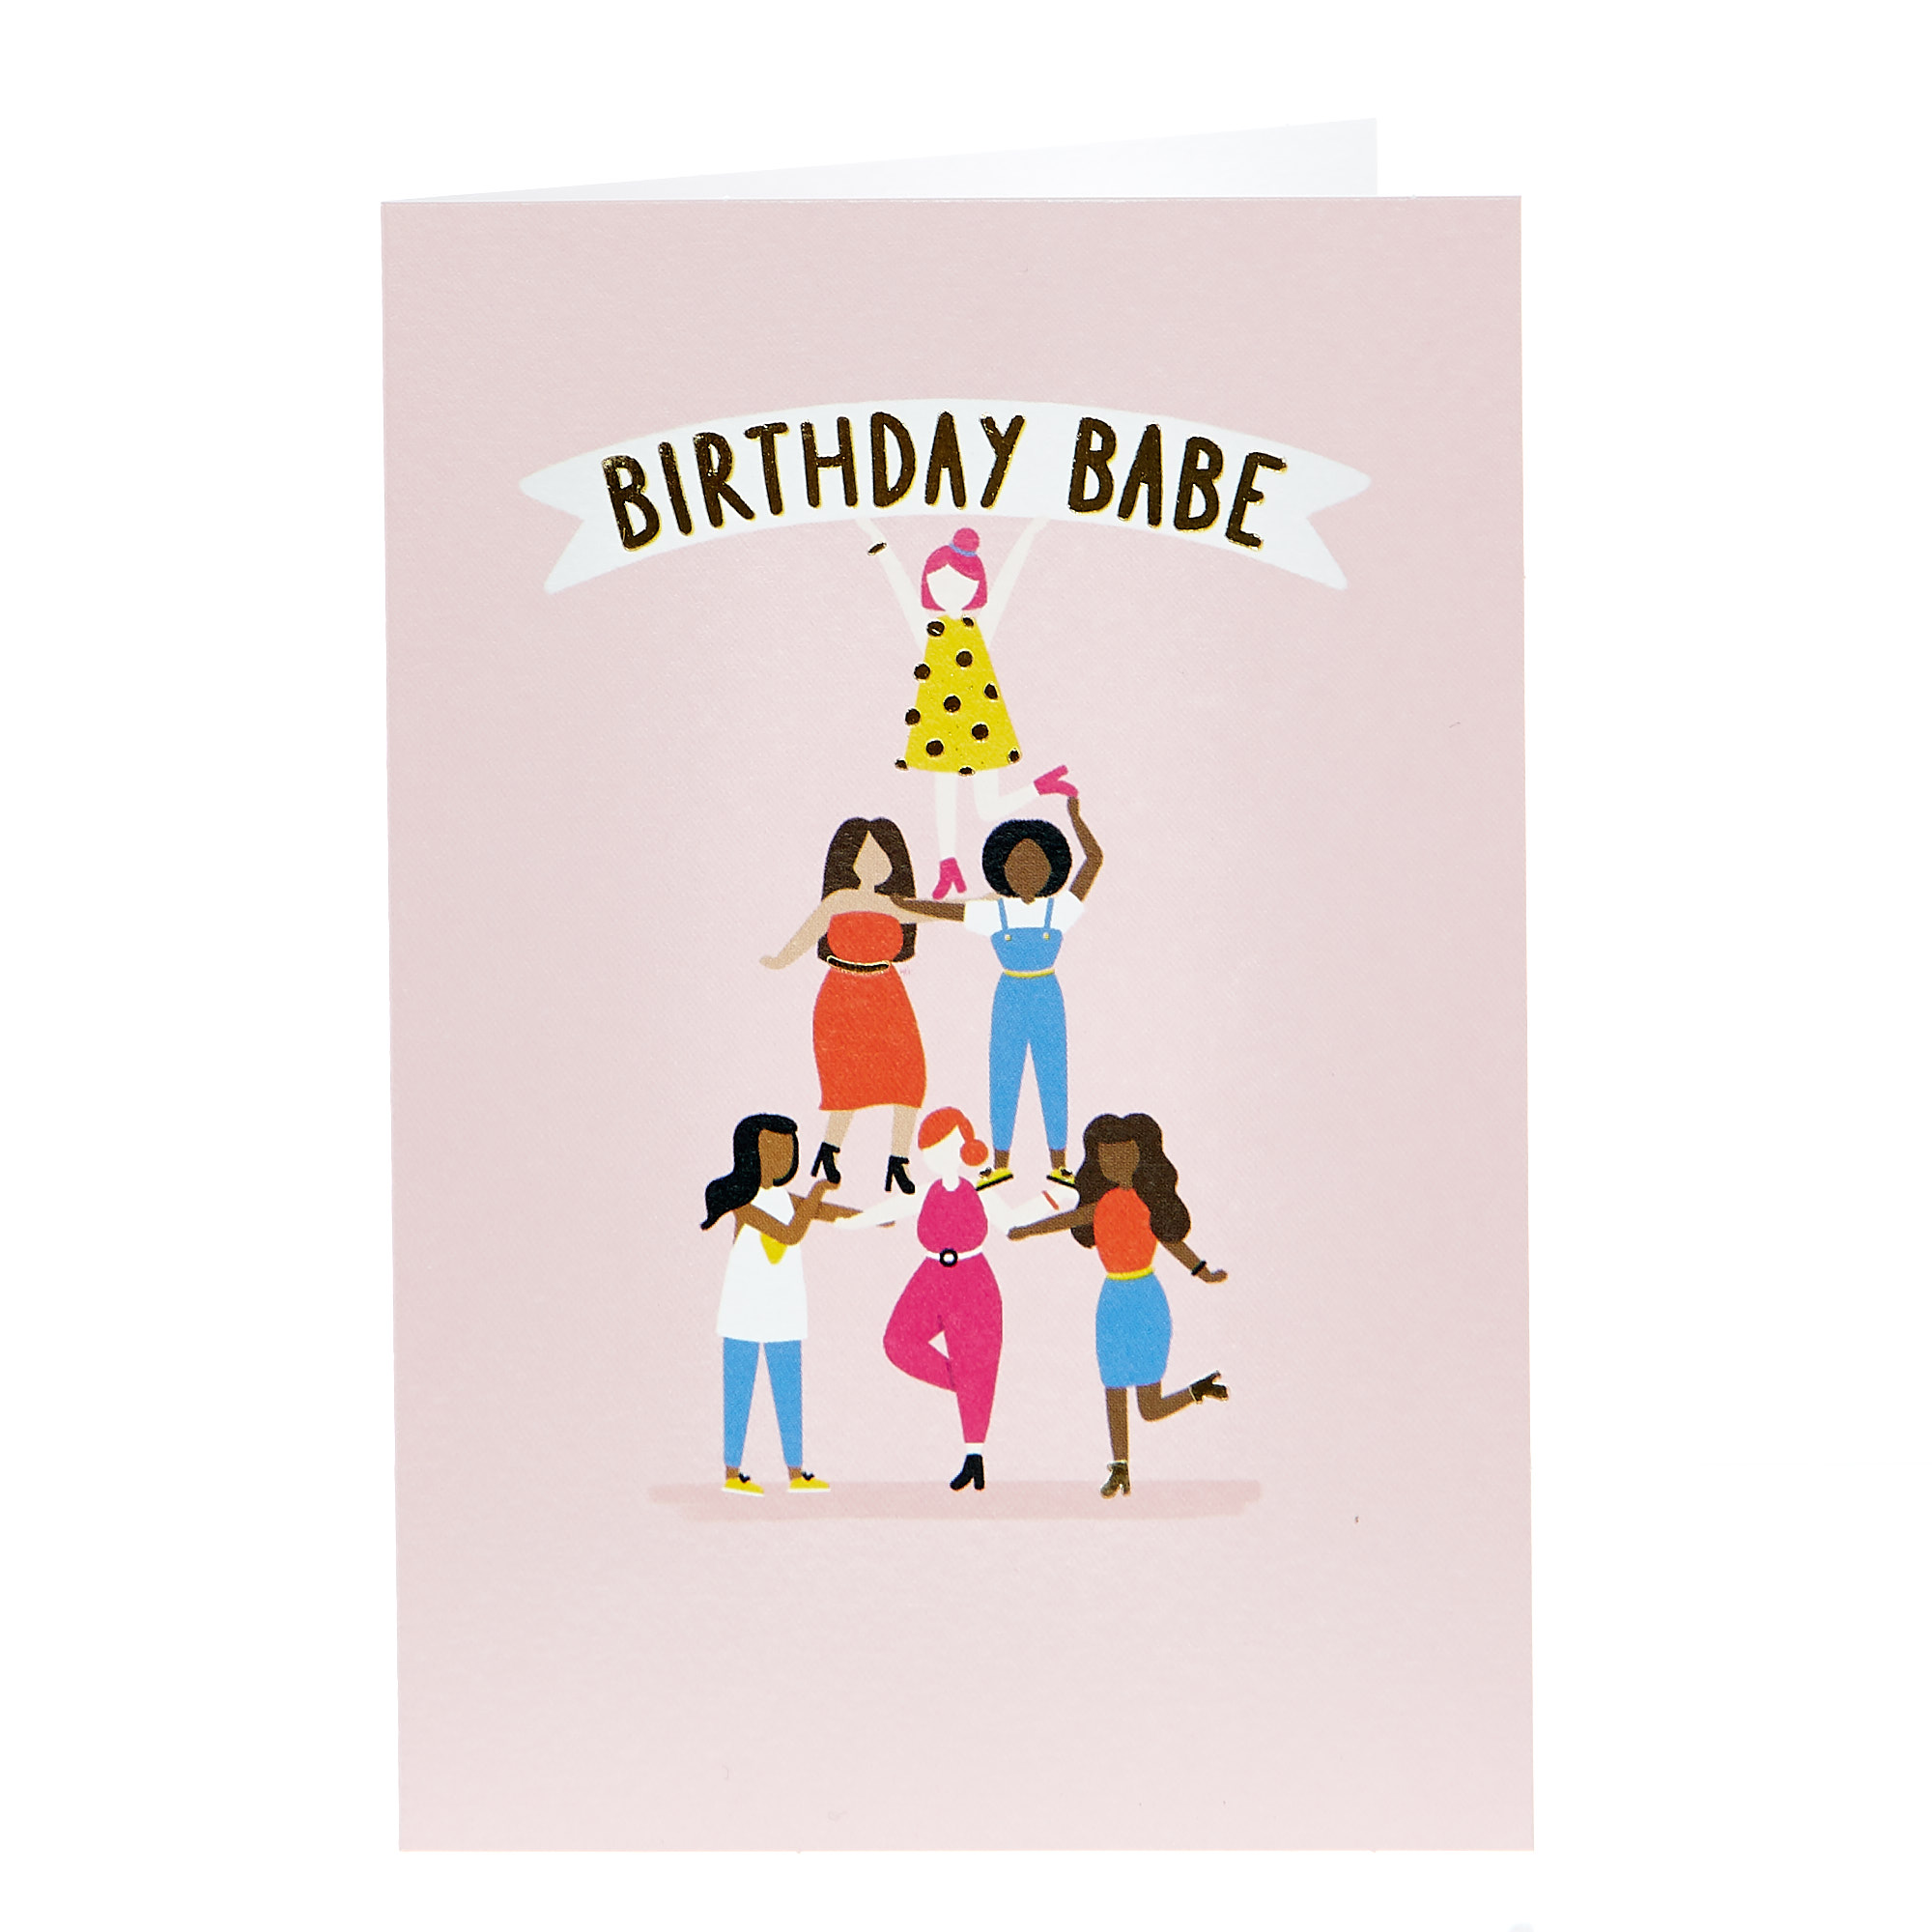 Birthday Card - Birthday Babe Pyramid